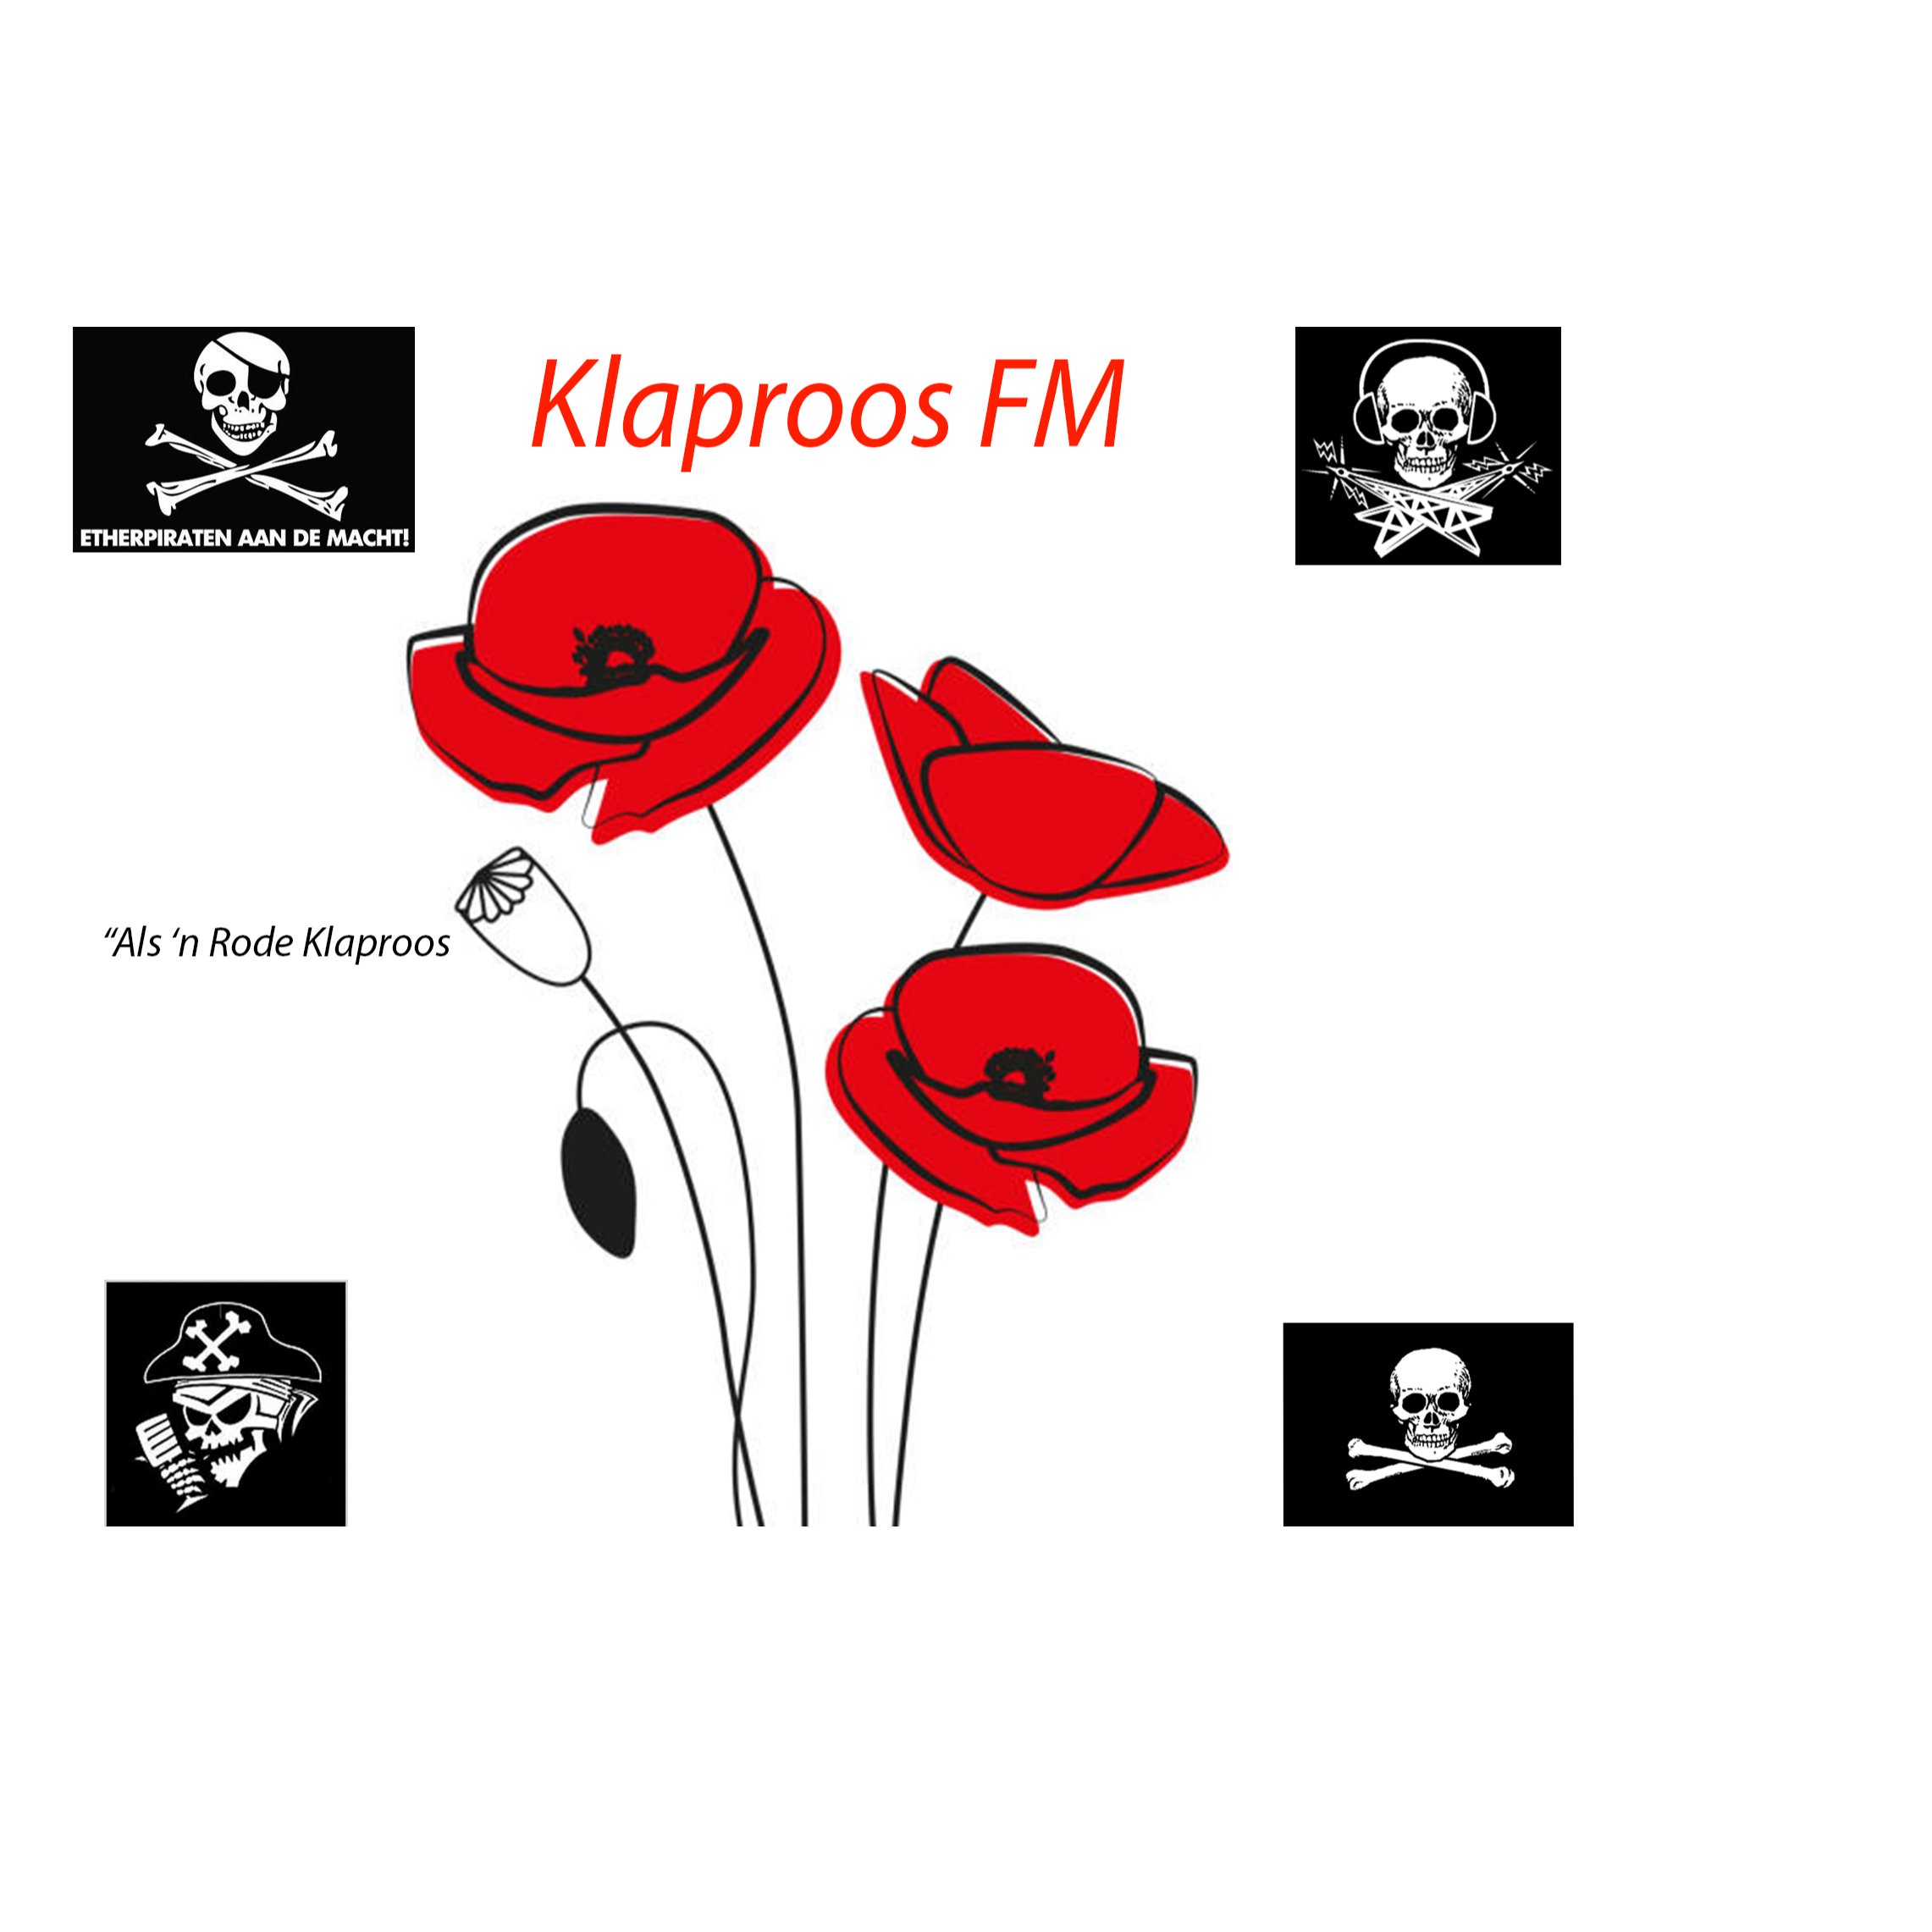 Klaproos FM